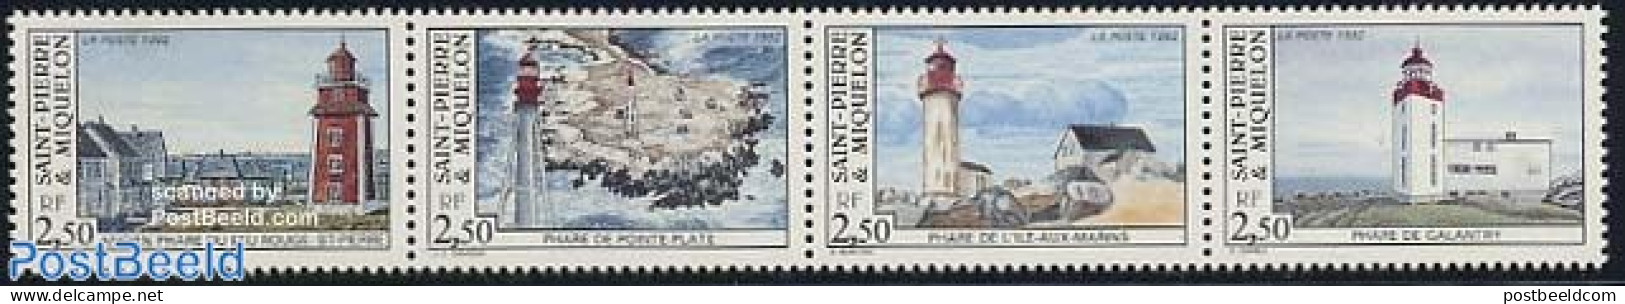 Saint Pierre And Miquelon 1992 Lighthouses 4v [:::], Mint NH, Various - Lighthouses & Safety At Sea - Lighthouses